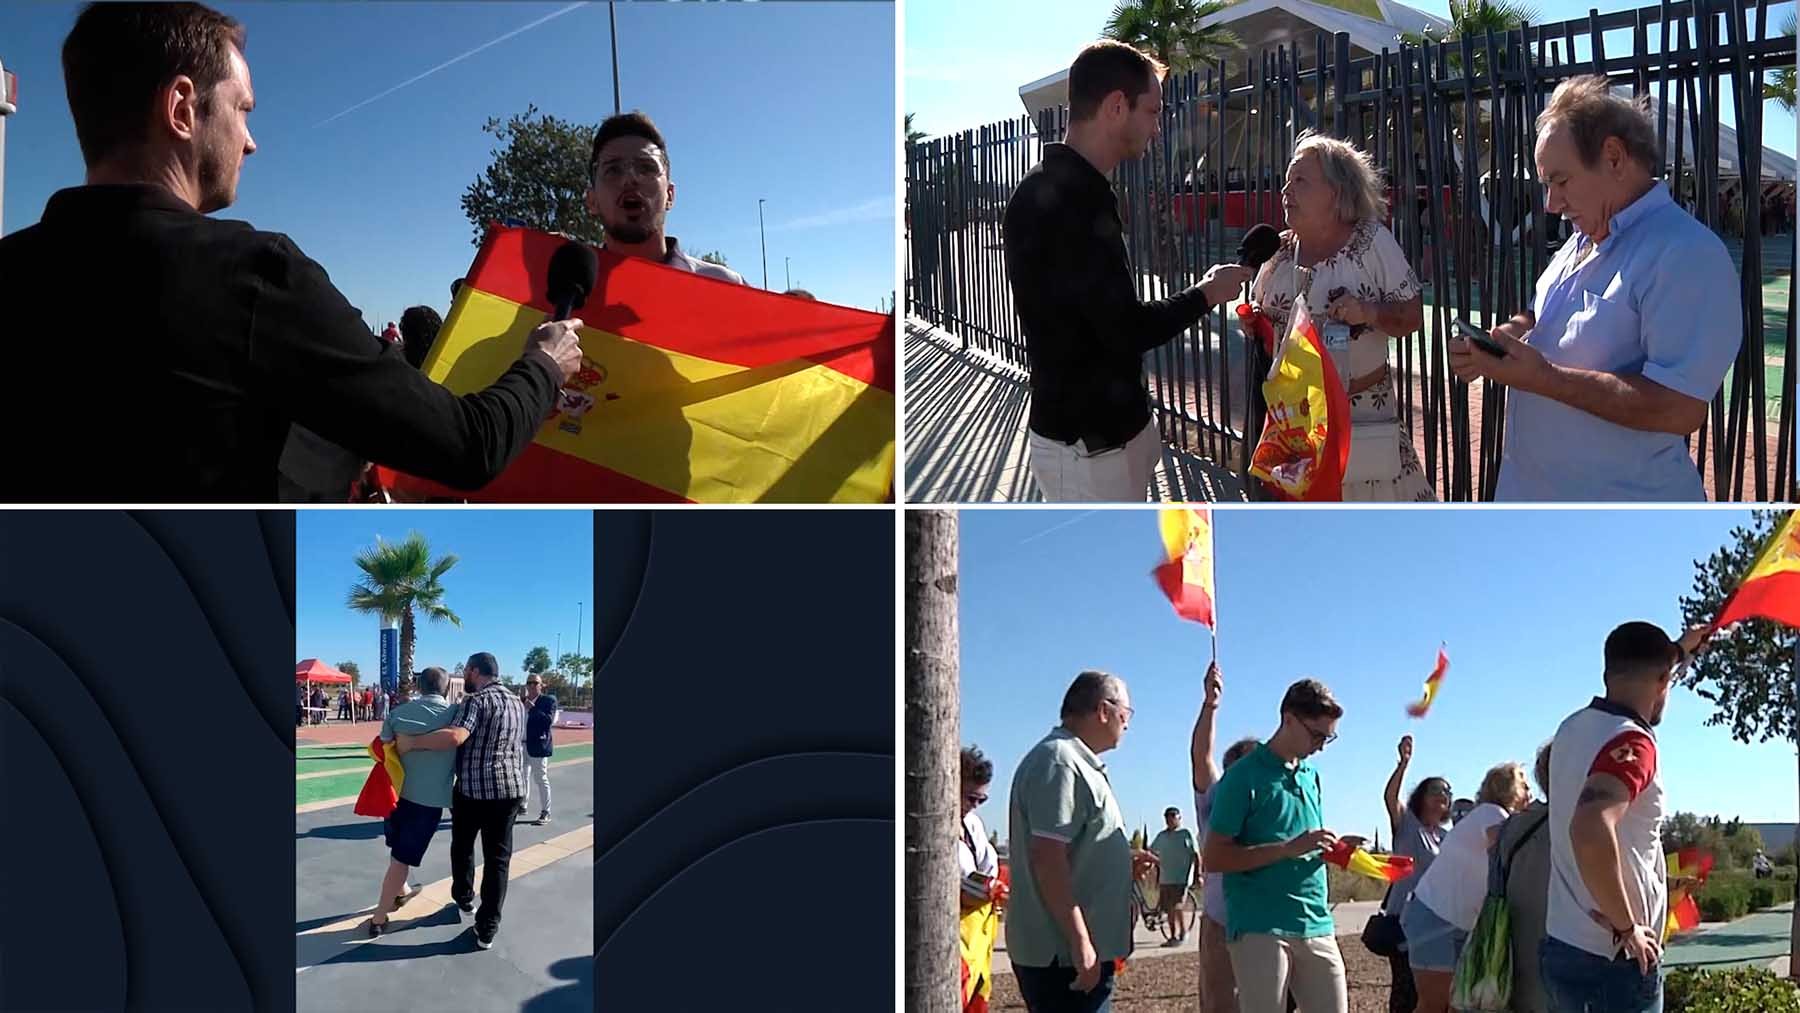 El PSOE expulsa violentamente a asistentes al mitin de Sánchez en Sevilla.